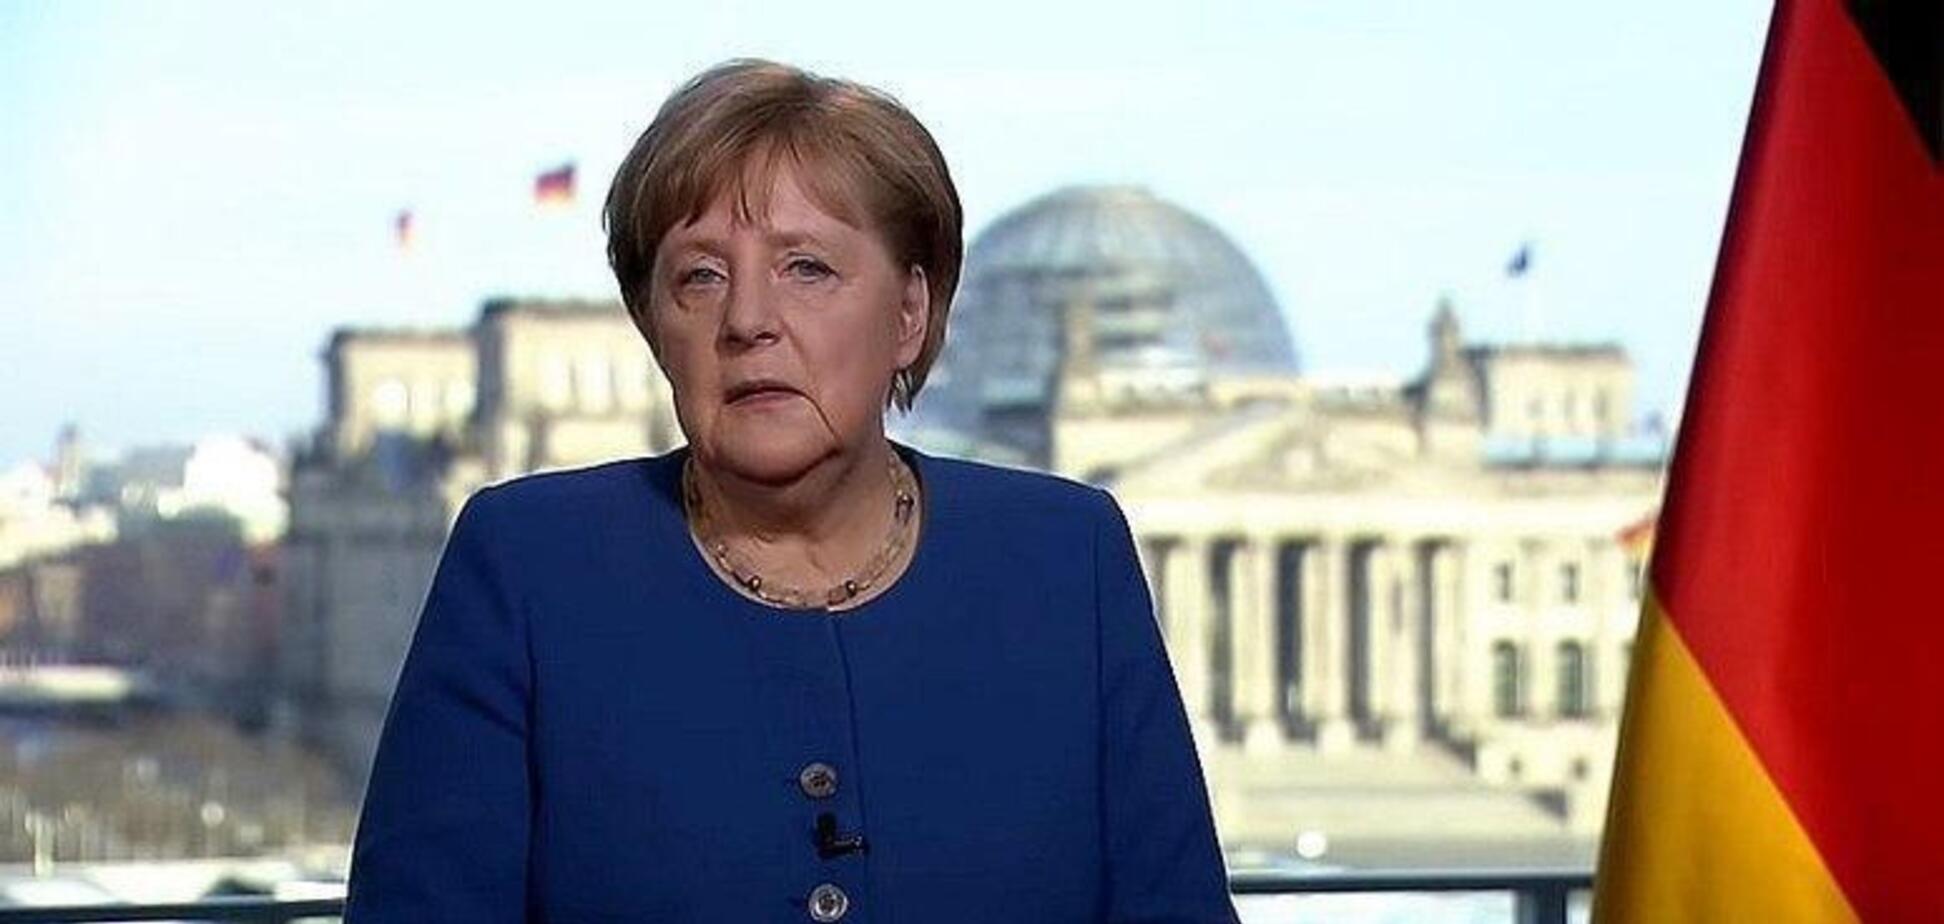 Меркель ізолювалася: канцлерка Німеччини опинилася під загрозою коронавірусу